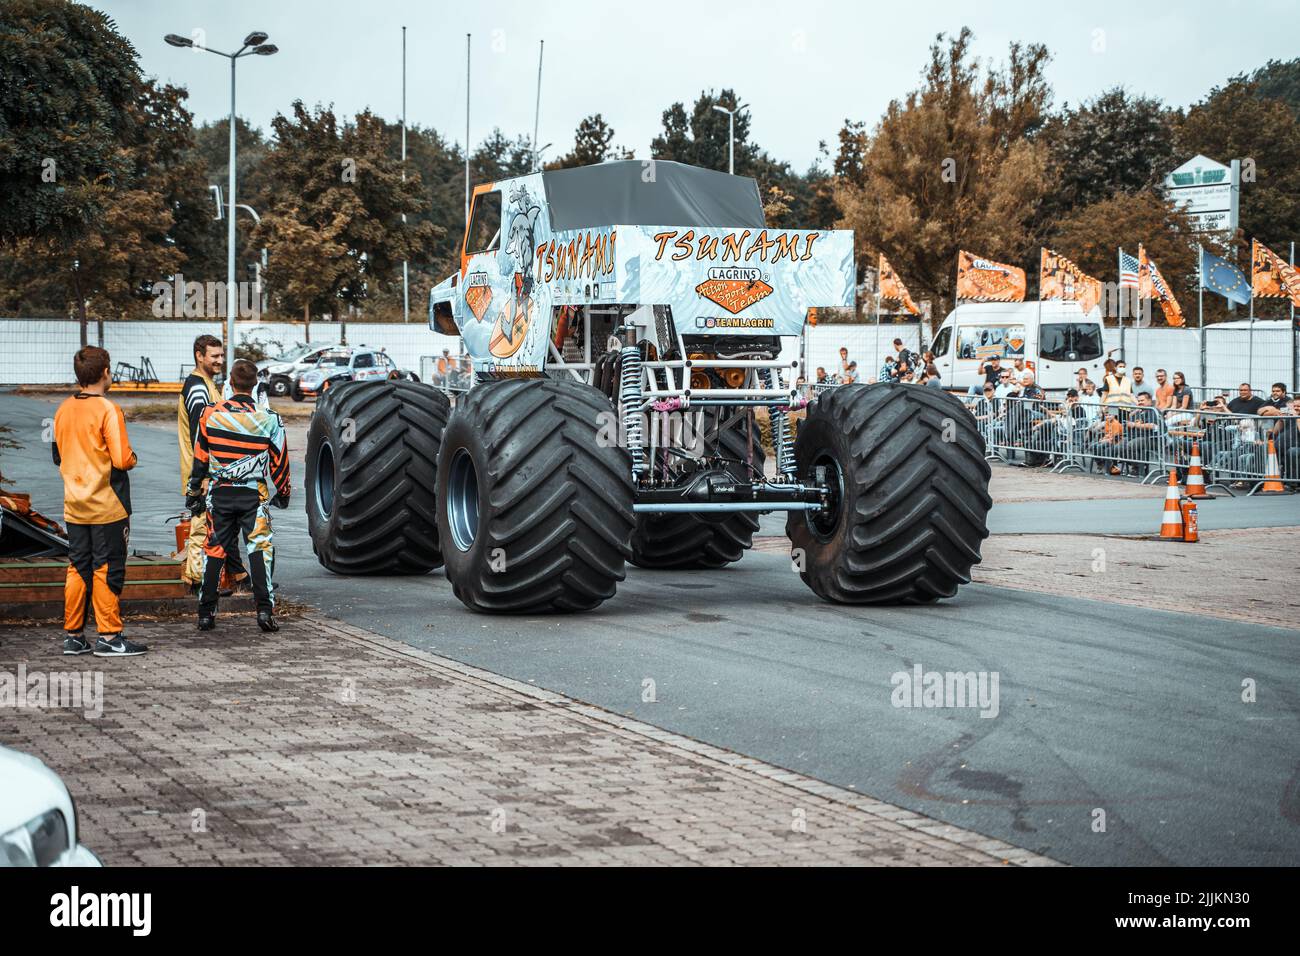 El monstruo de camión en la exposición del equipo Action Sport Team de Lagrin en Lohne, Alemania. Foto de stock